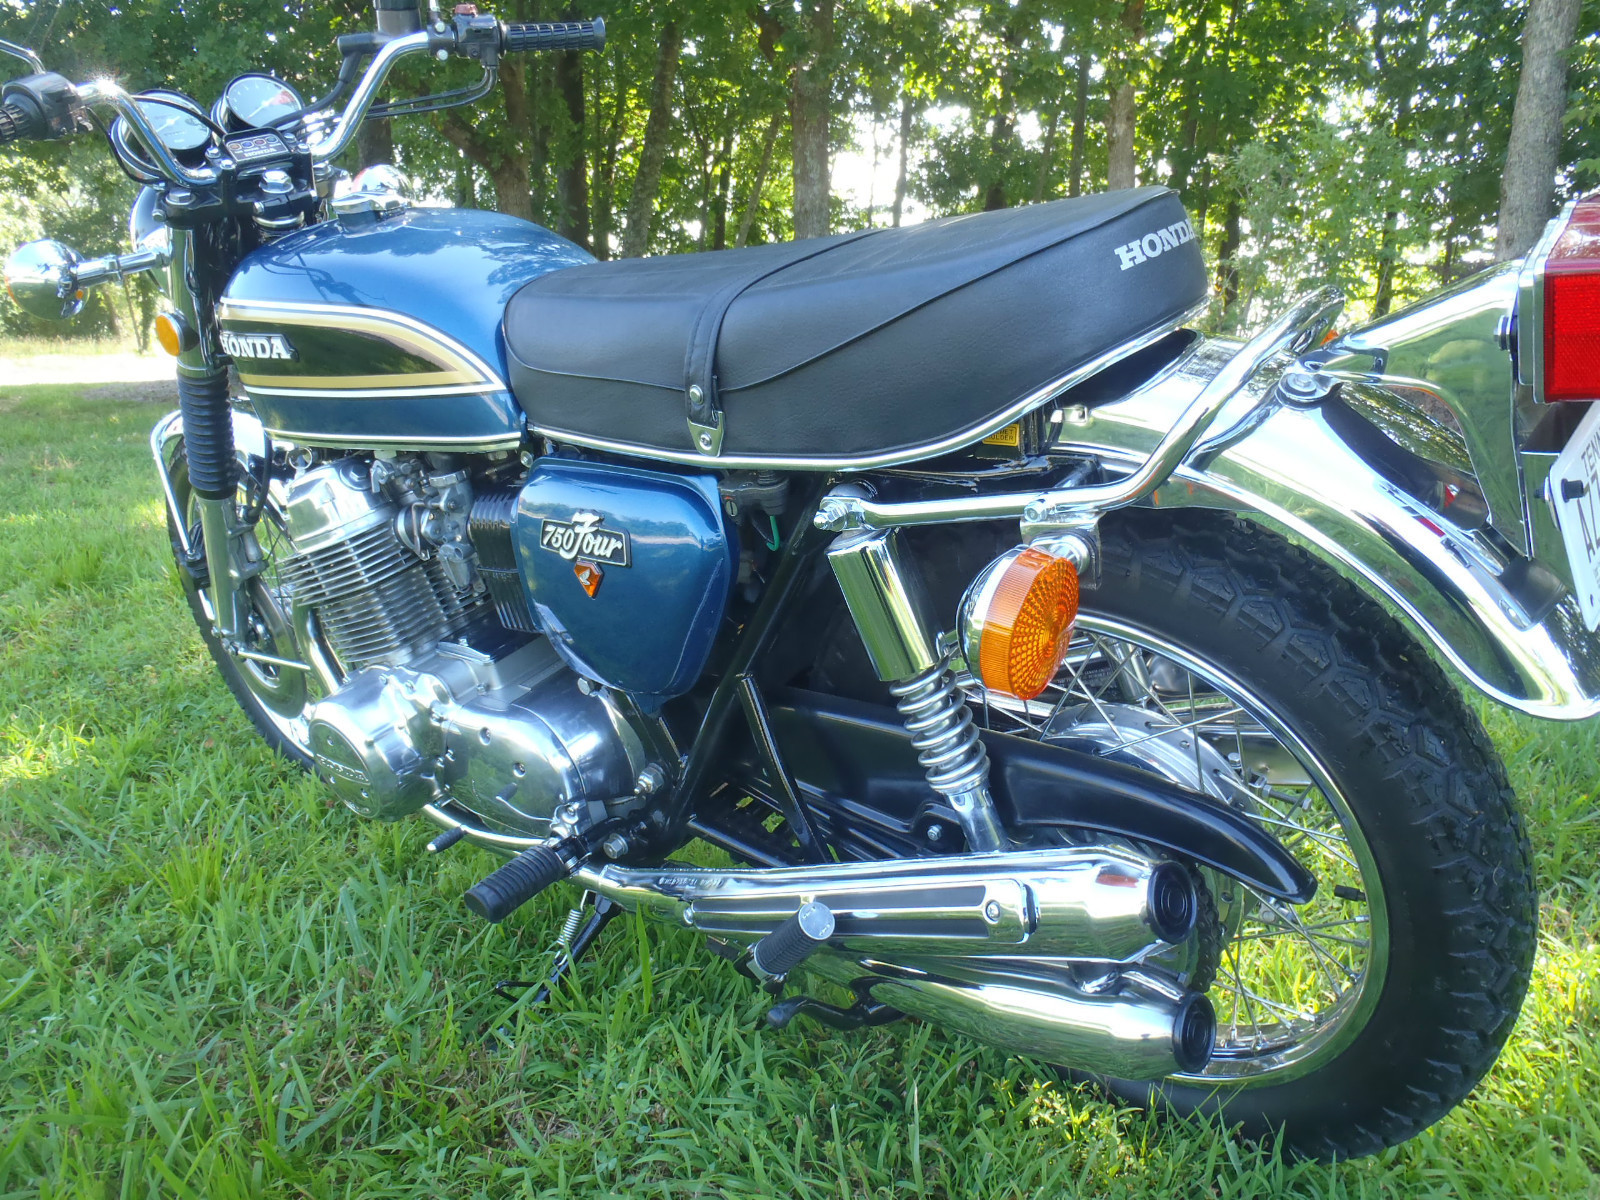 Honda CB750 - 1975